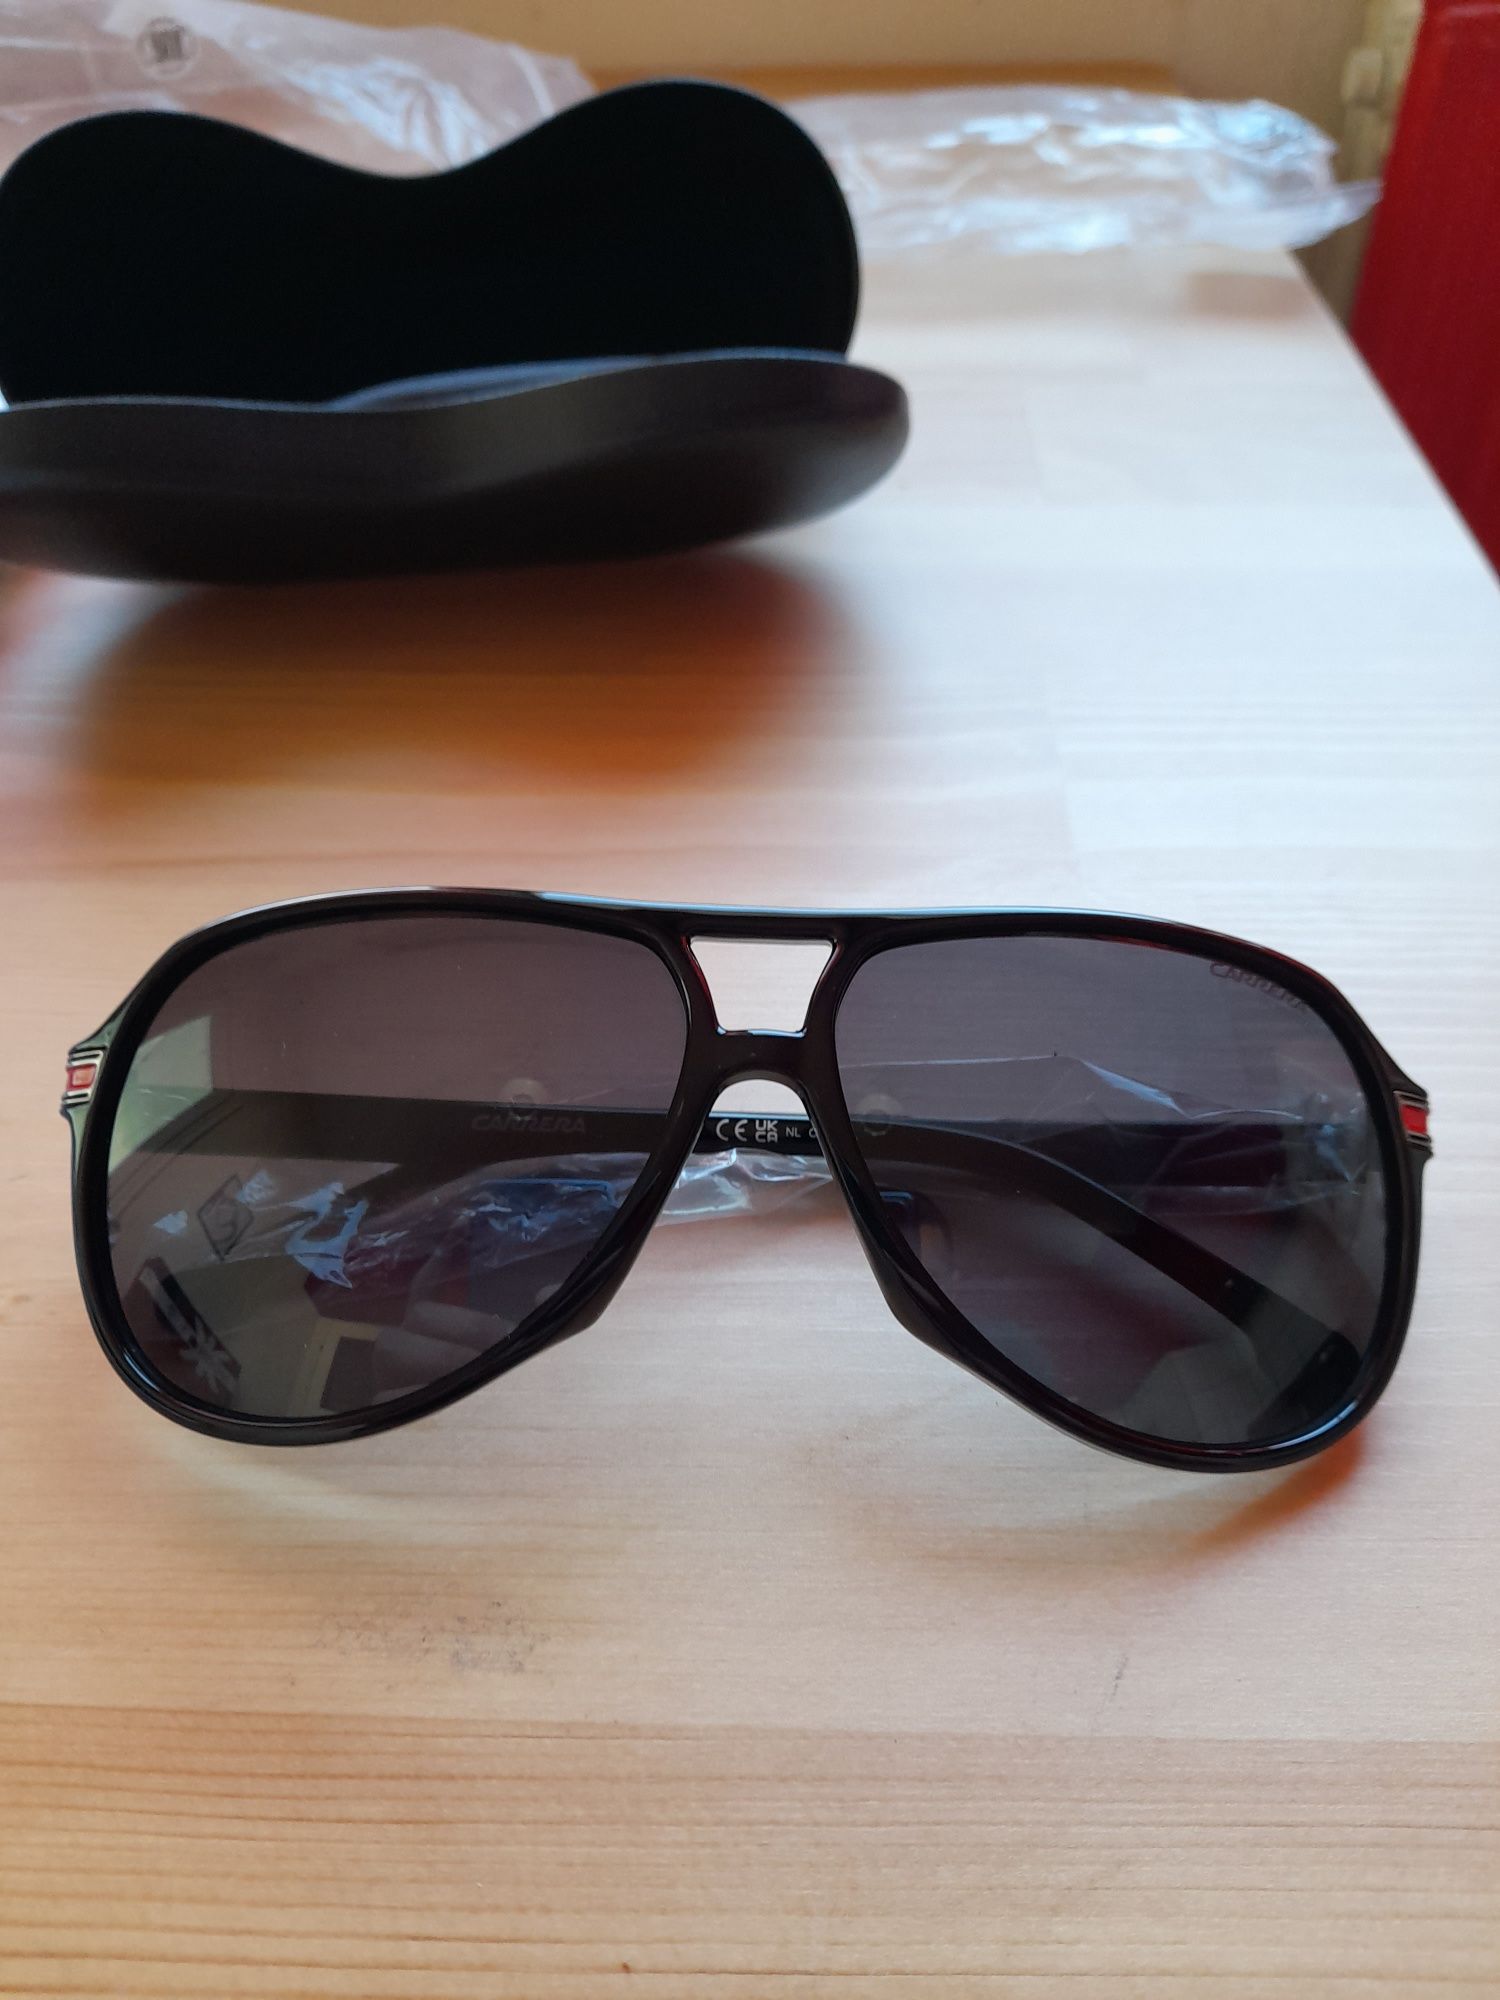 Слънчеви очила Carrera 1045/s